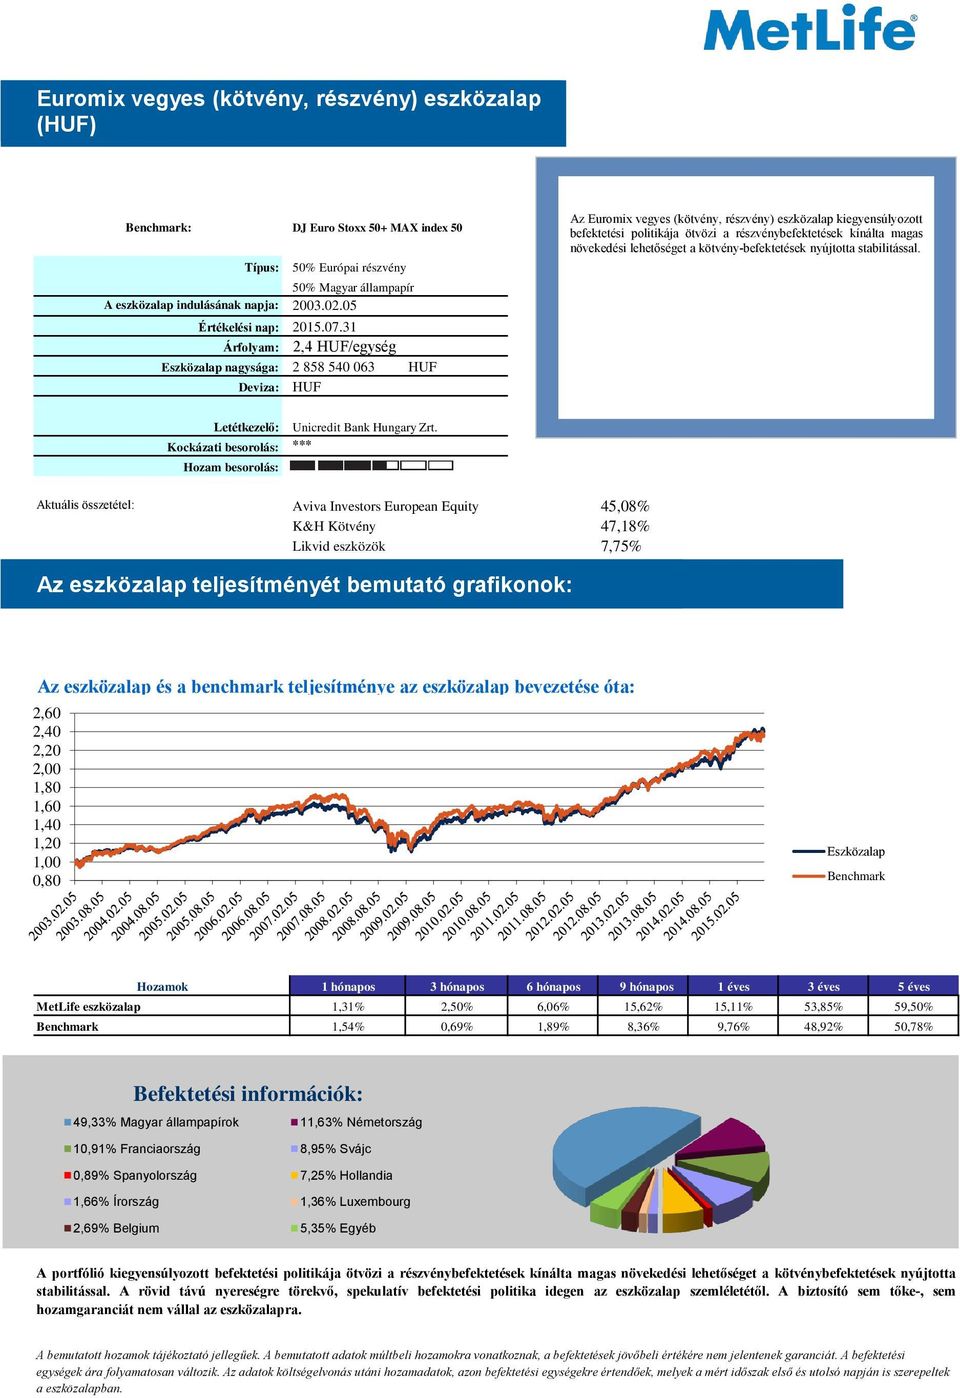 05 Árfolyam: 2,4 HUF/egység nagysága: 2 858 540 063 HUF Deviza: HUF Az Euromix vegyes (kötvény, részvény) eszközalap kiegyensúlyozott befektetési politikája ötvözi a részvénybefektetések kínálta